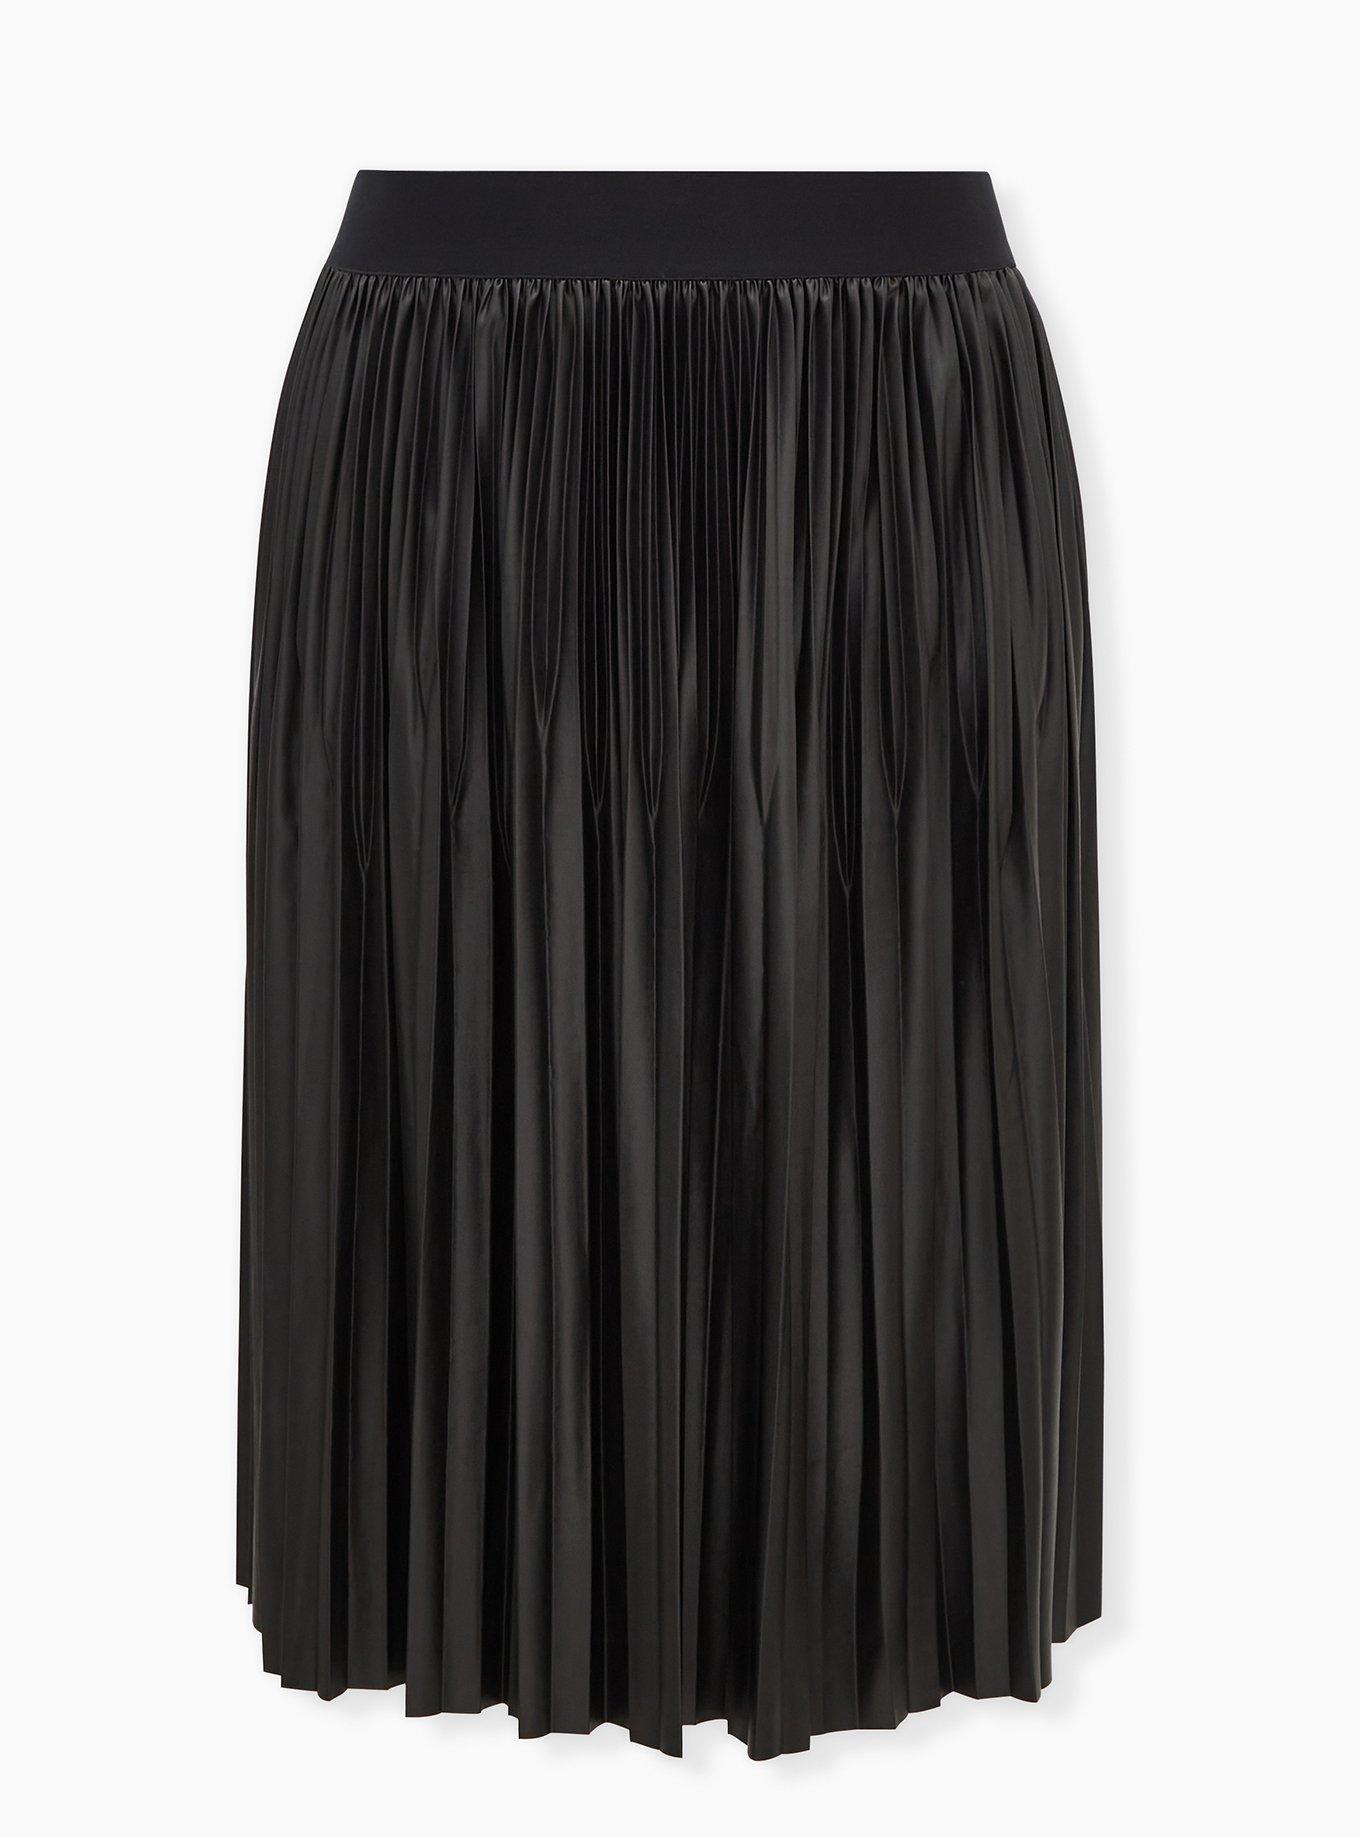 Torrid Women’s Plus Size 2 Floral Print Line Black Full Midi Skirt